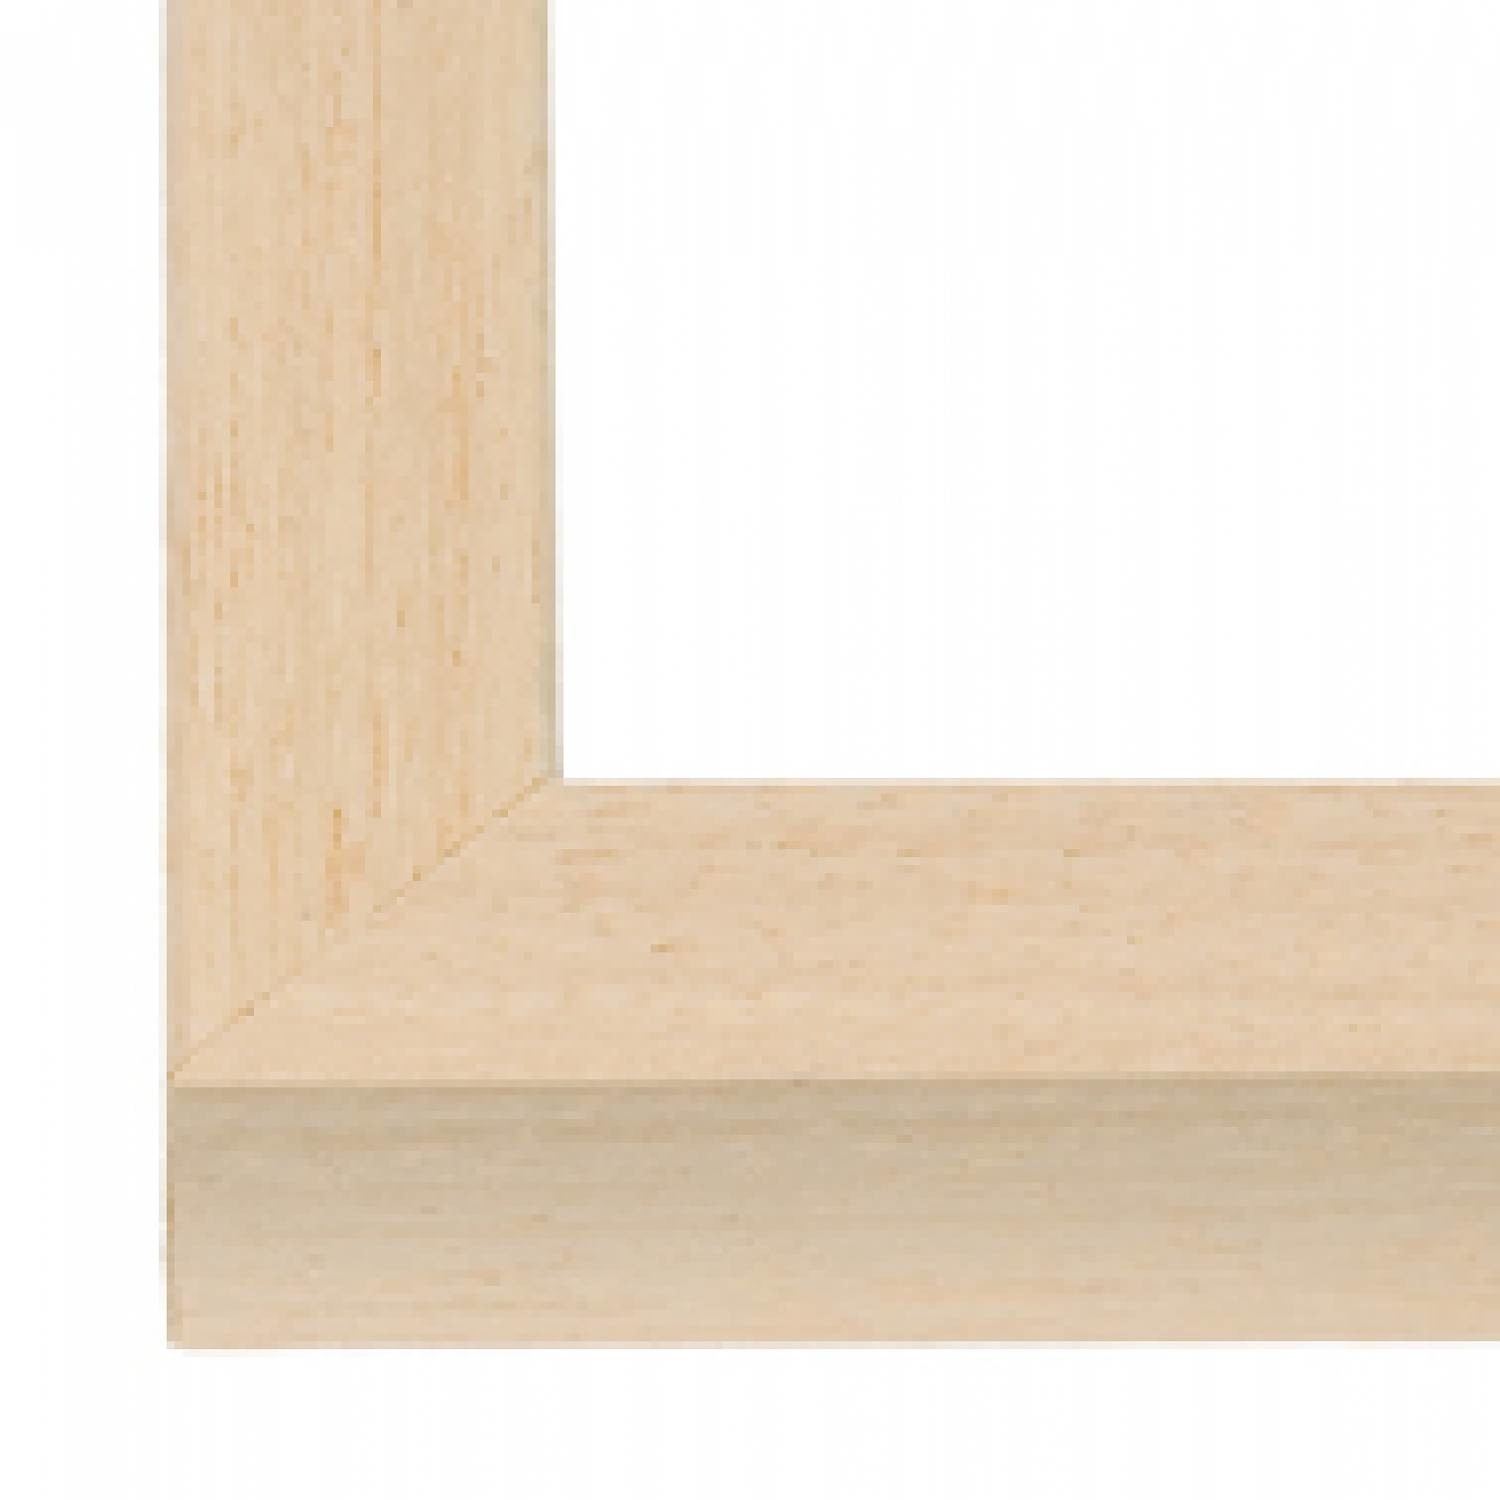 Blank houten - 15 mm brede lijst - Lijstenfabriek